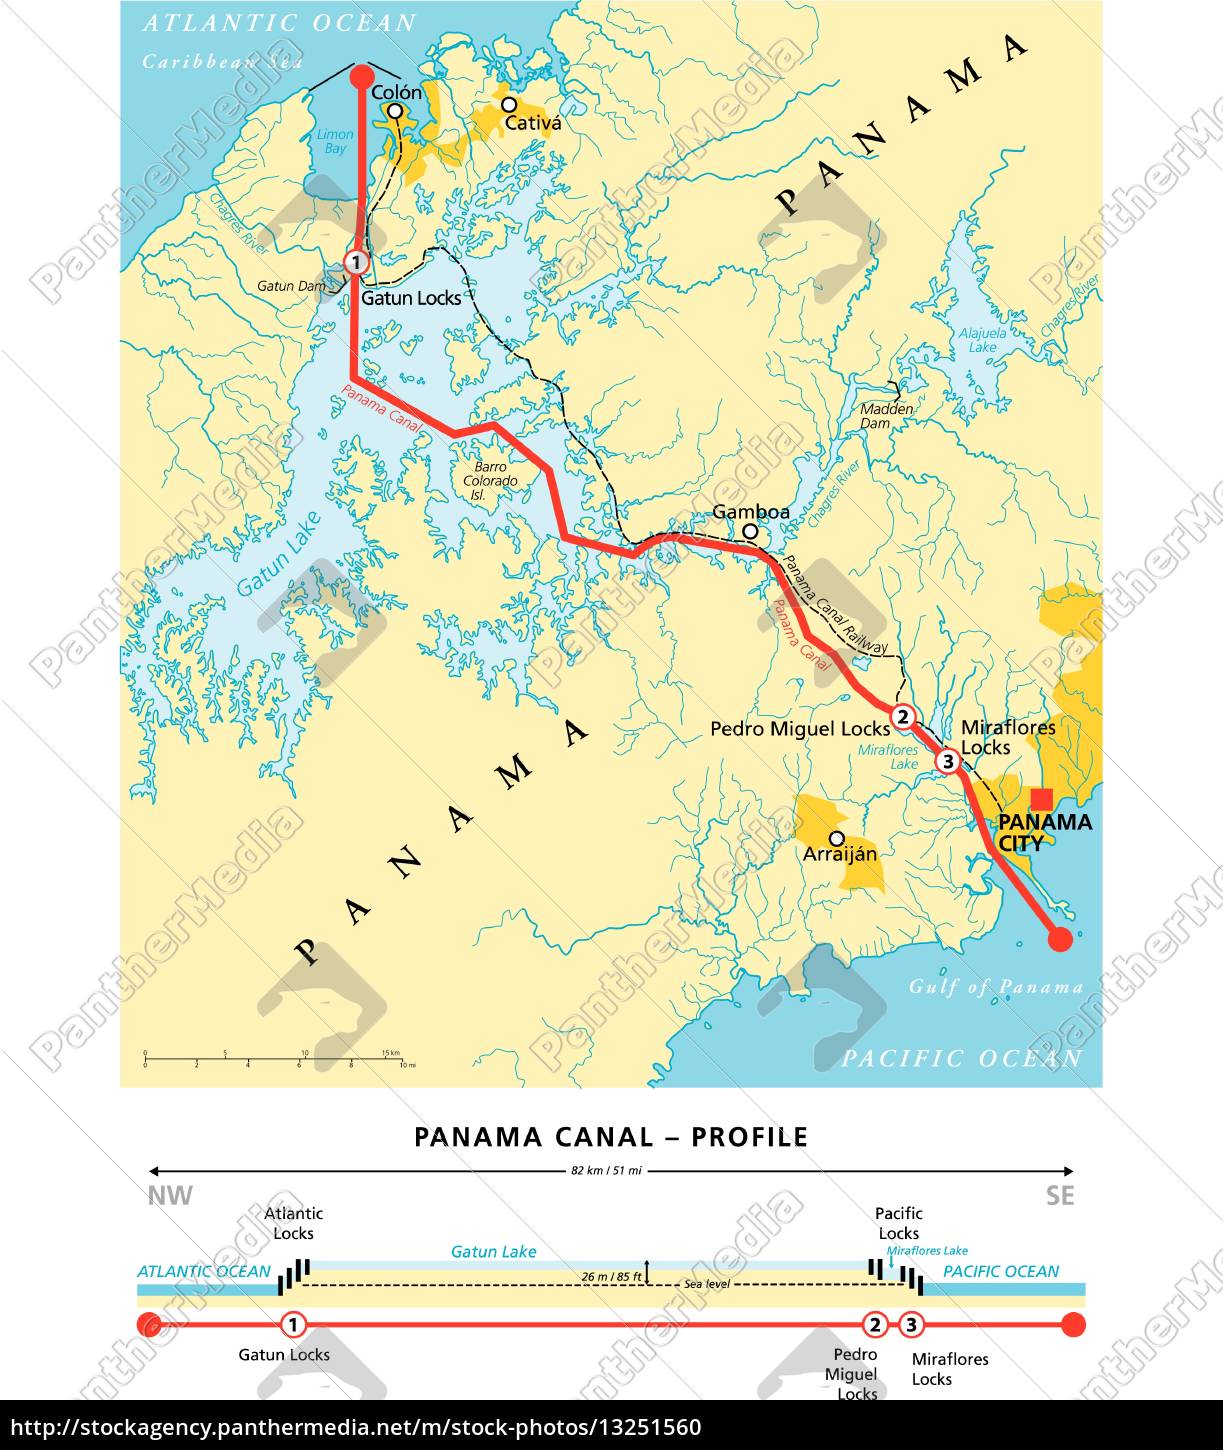 Qual a situação atual do Canal do Panamá?